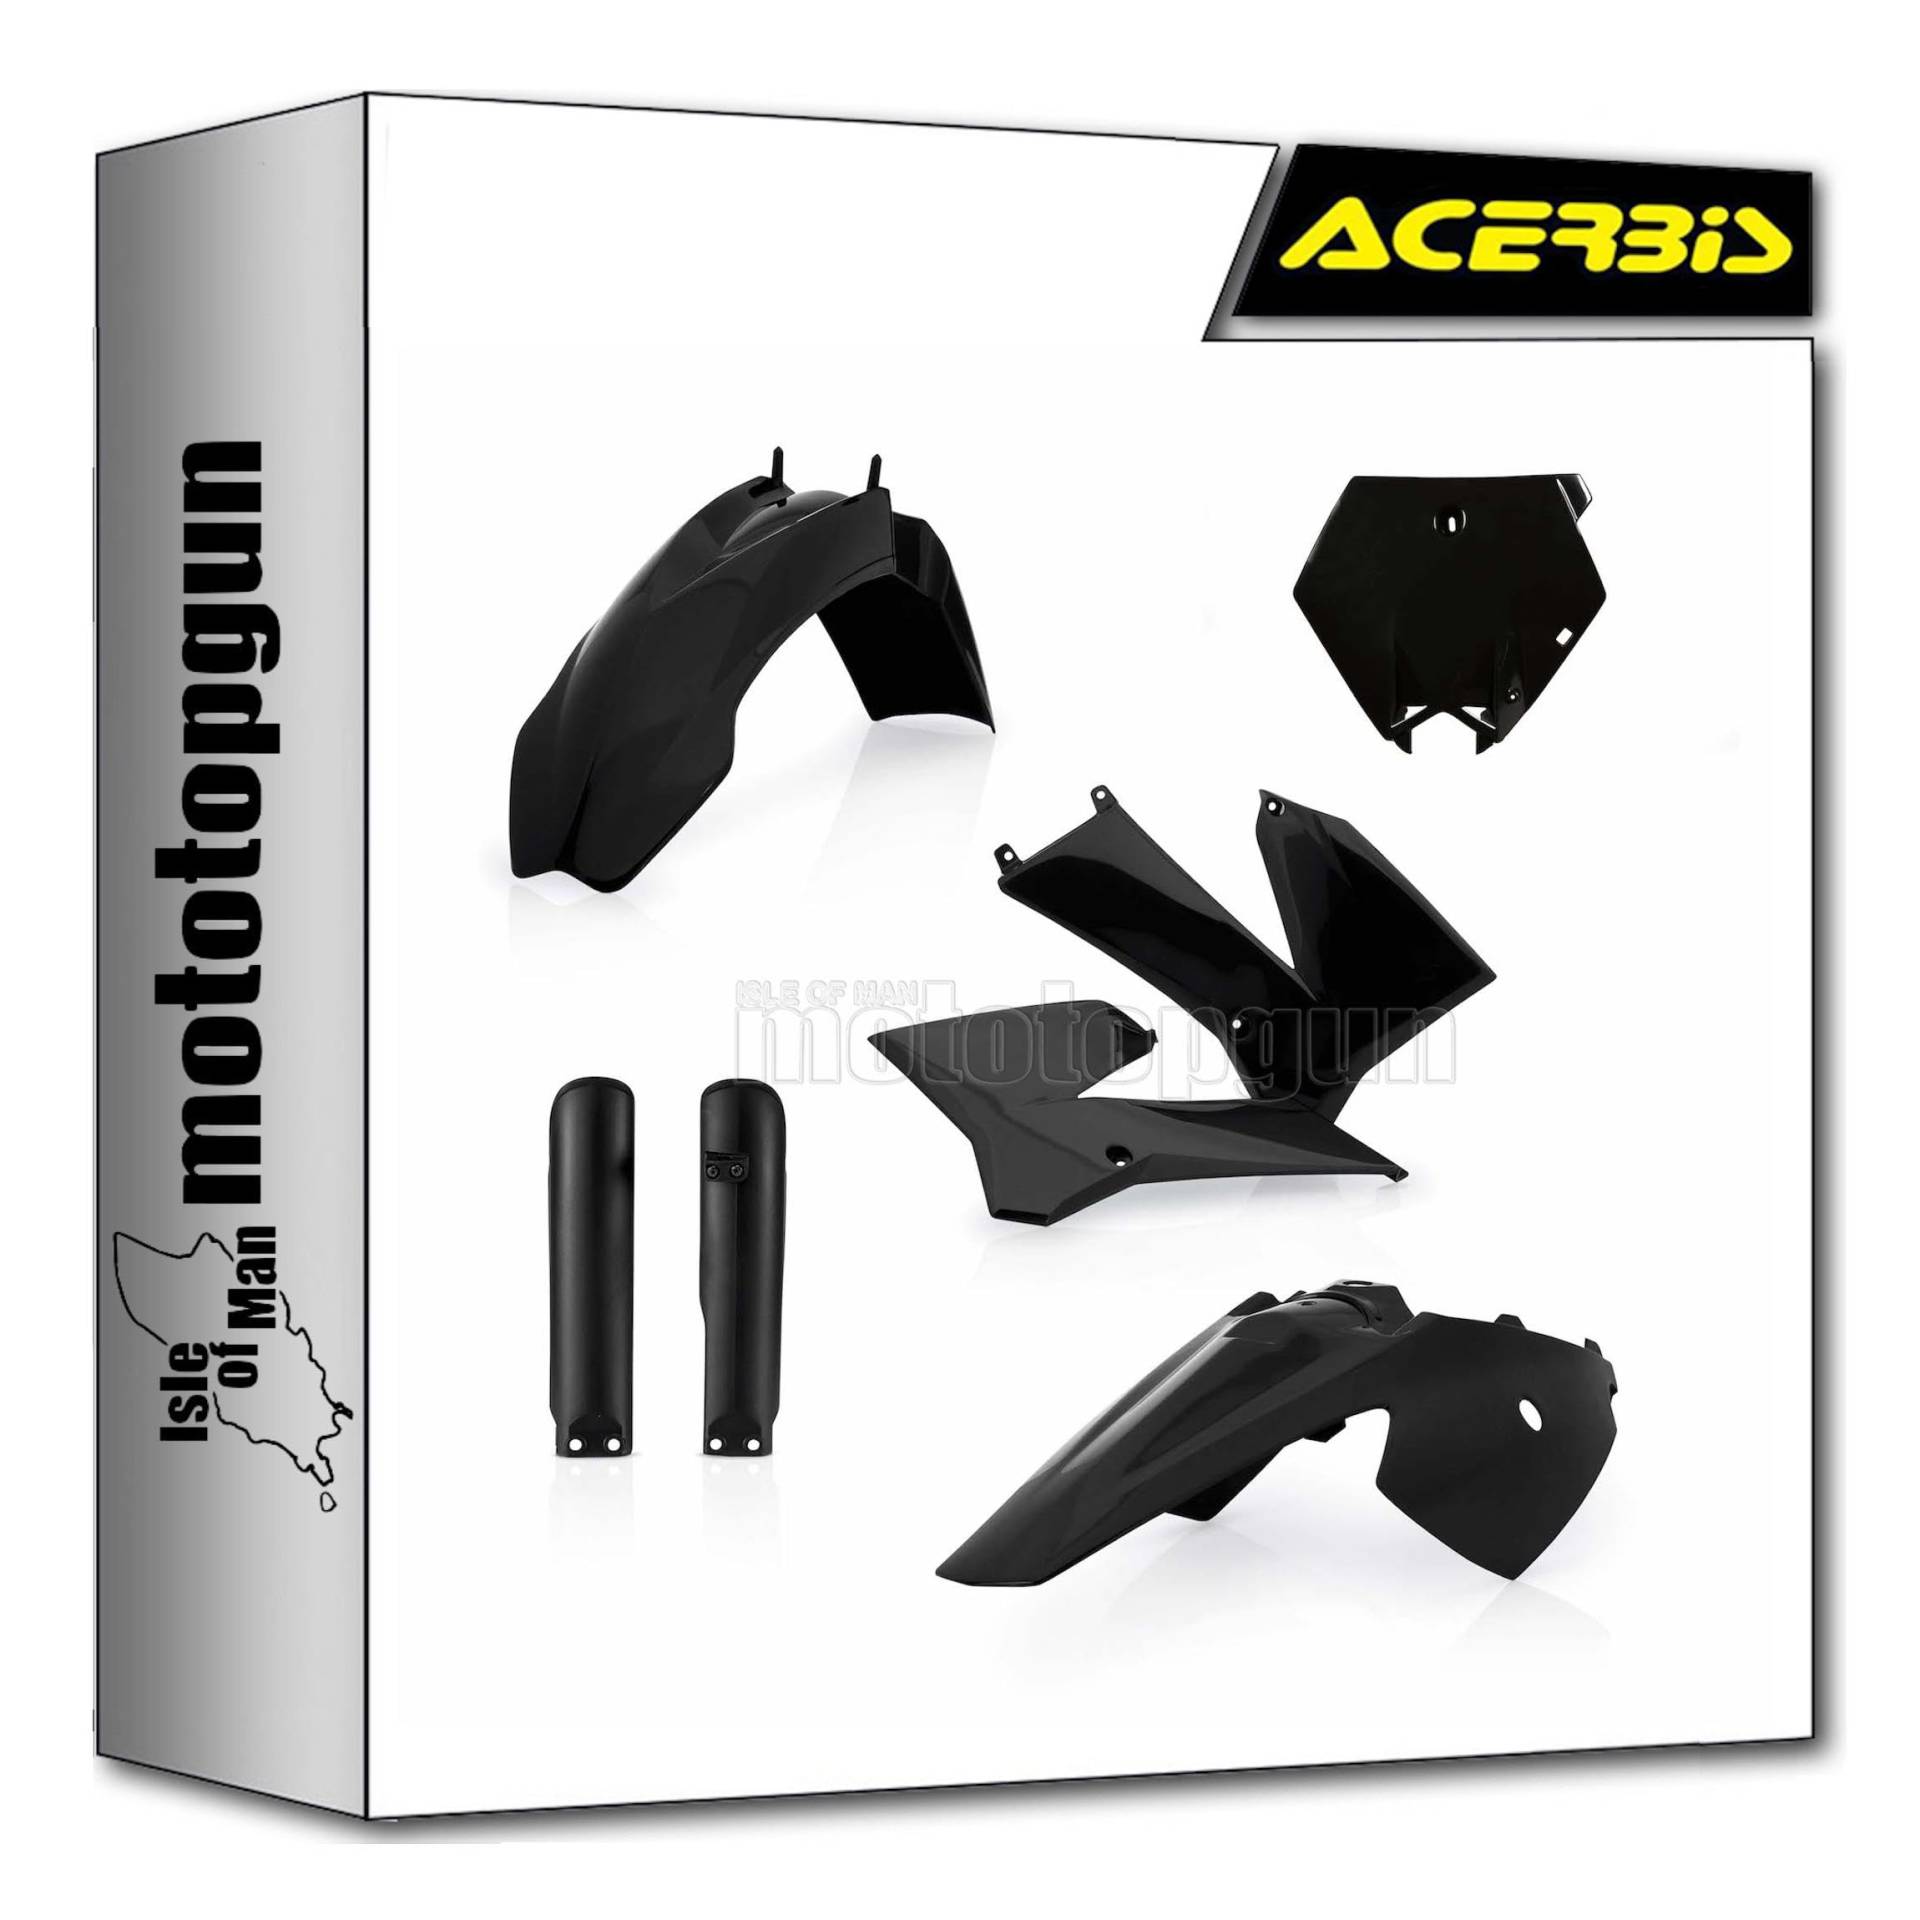 acerbis 0016374.090 plastic full kit schwarz kompatibel mit ktm sx 85 2006 2007 2008 2009 2010 2011 2012 mototopgun von MOTOTOPGUN